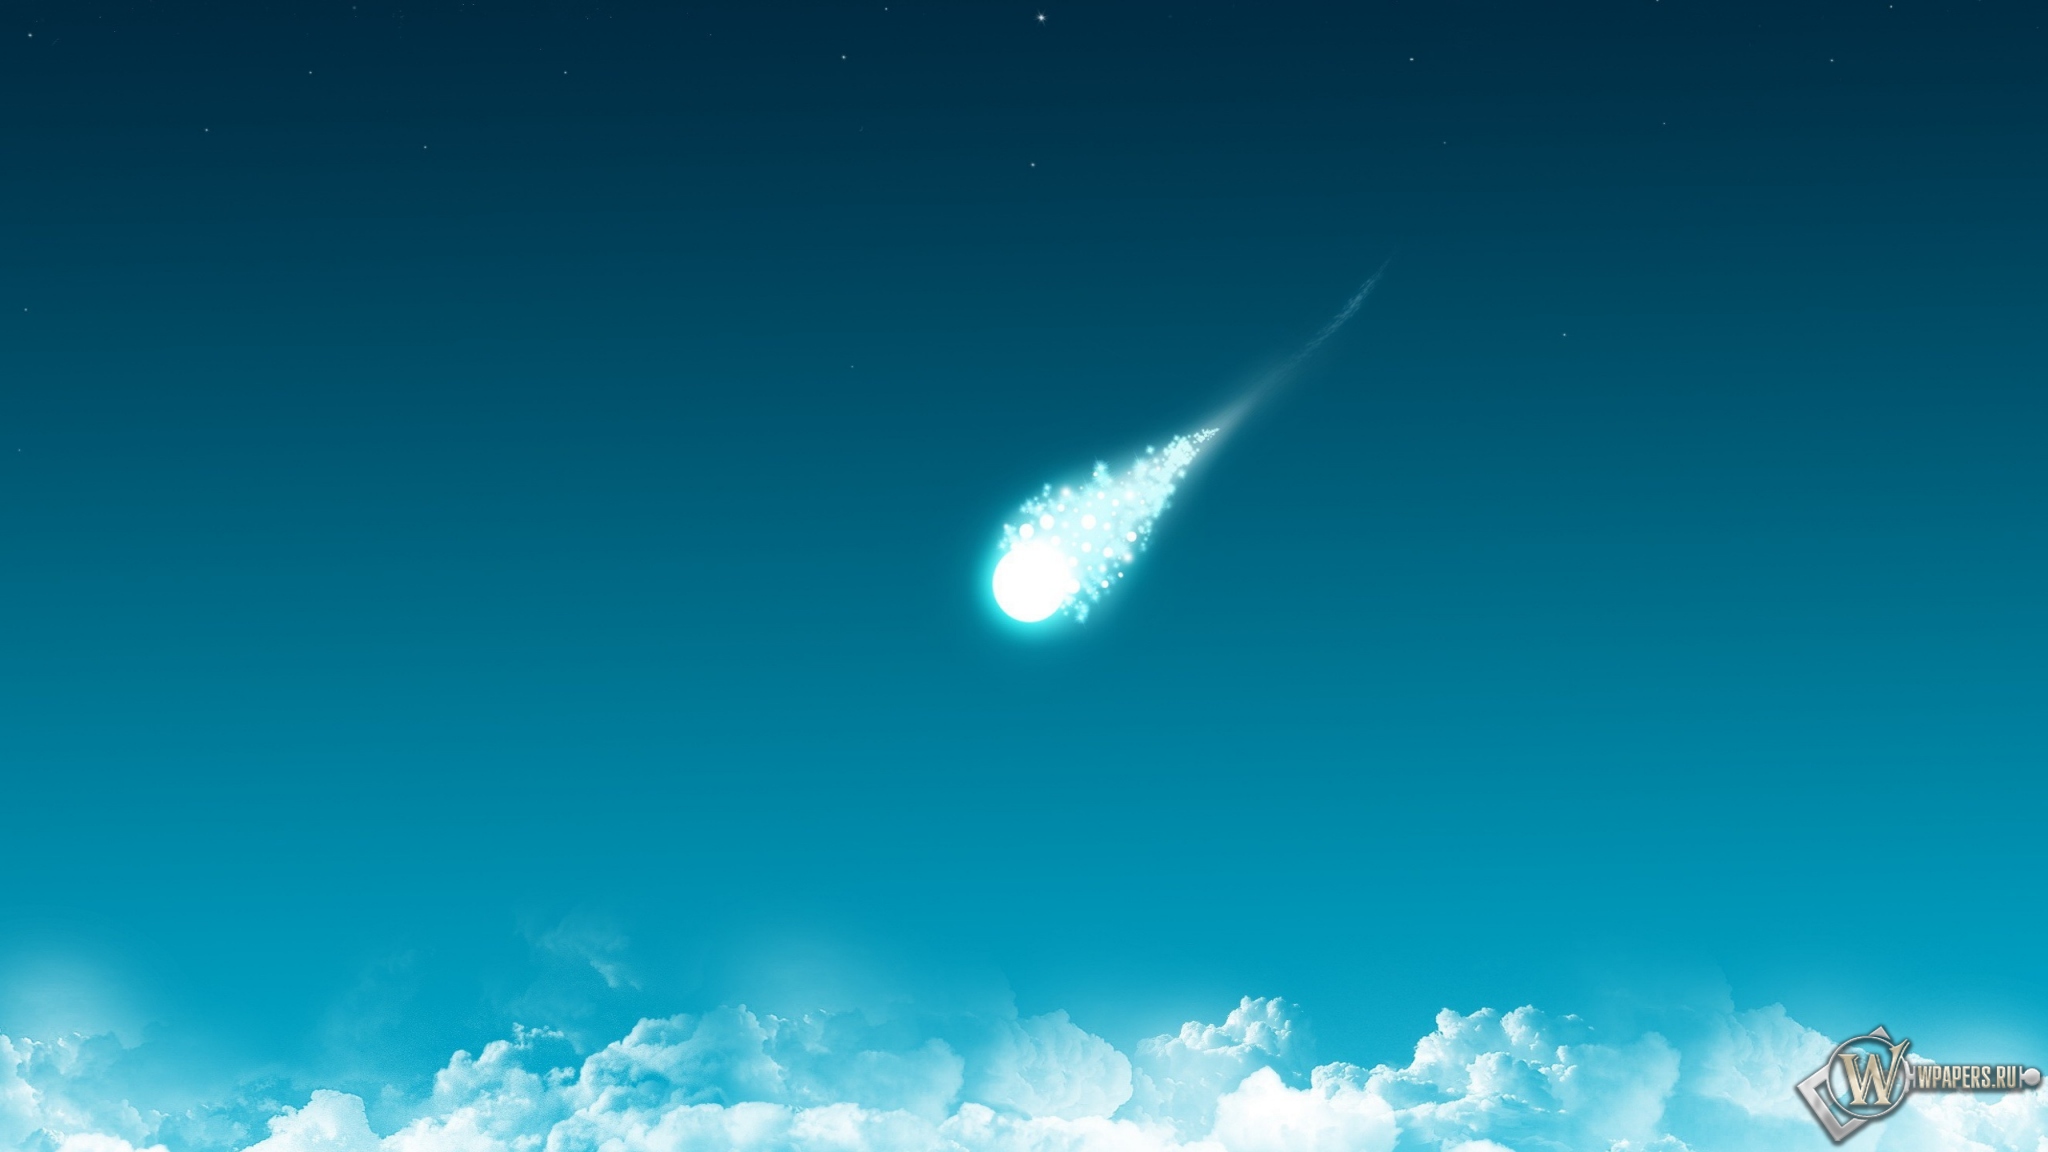 Комета 2048x1152